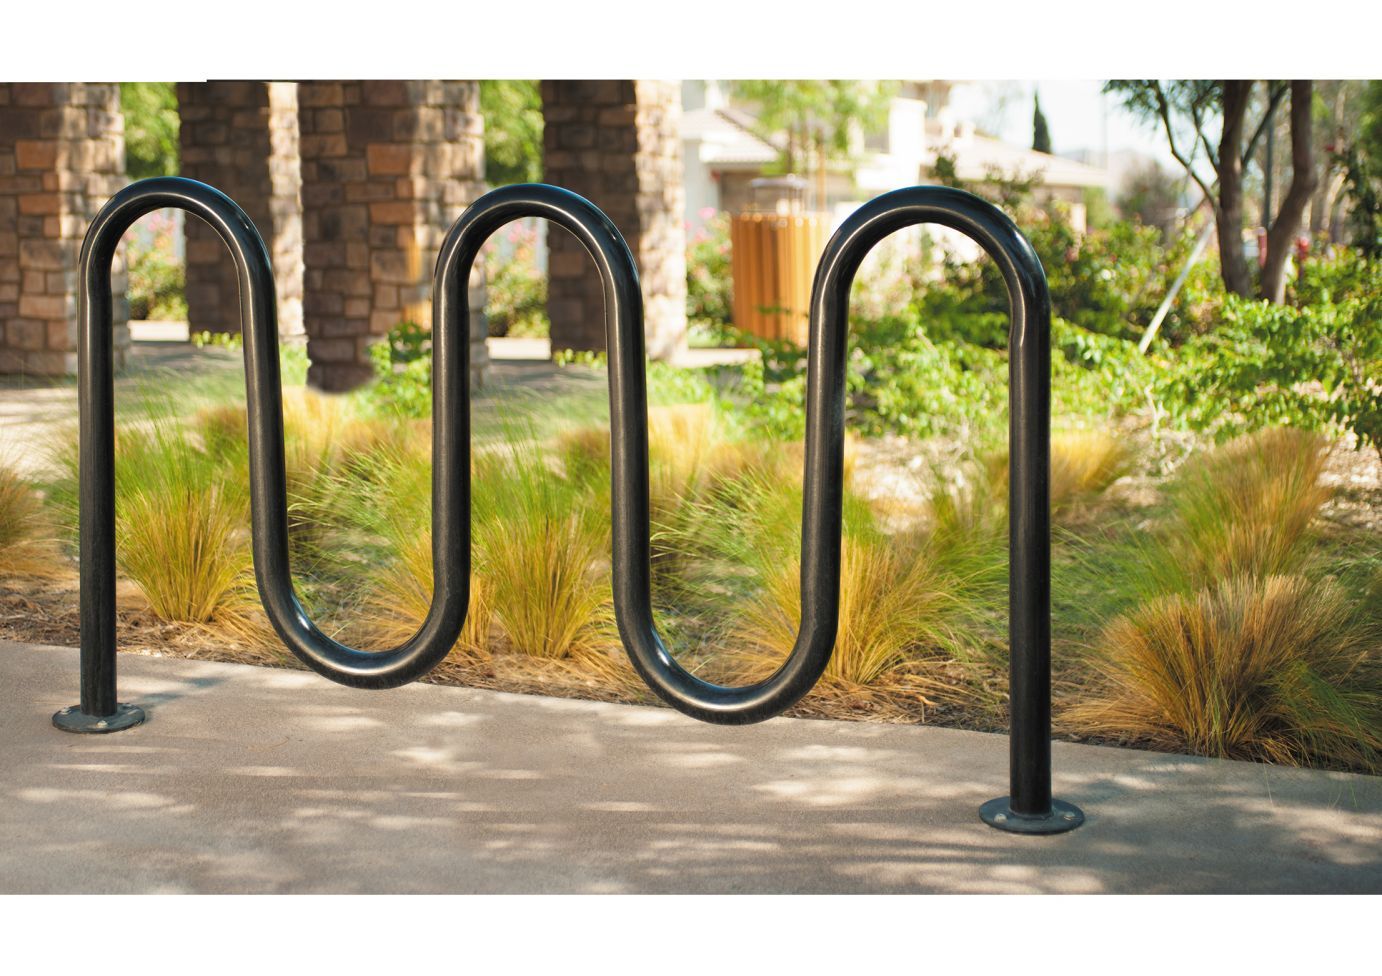 Contemporary Loop Bicycle Rack - Five Loop